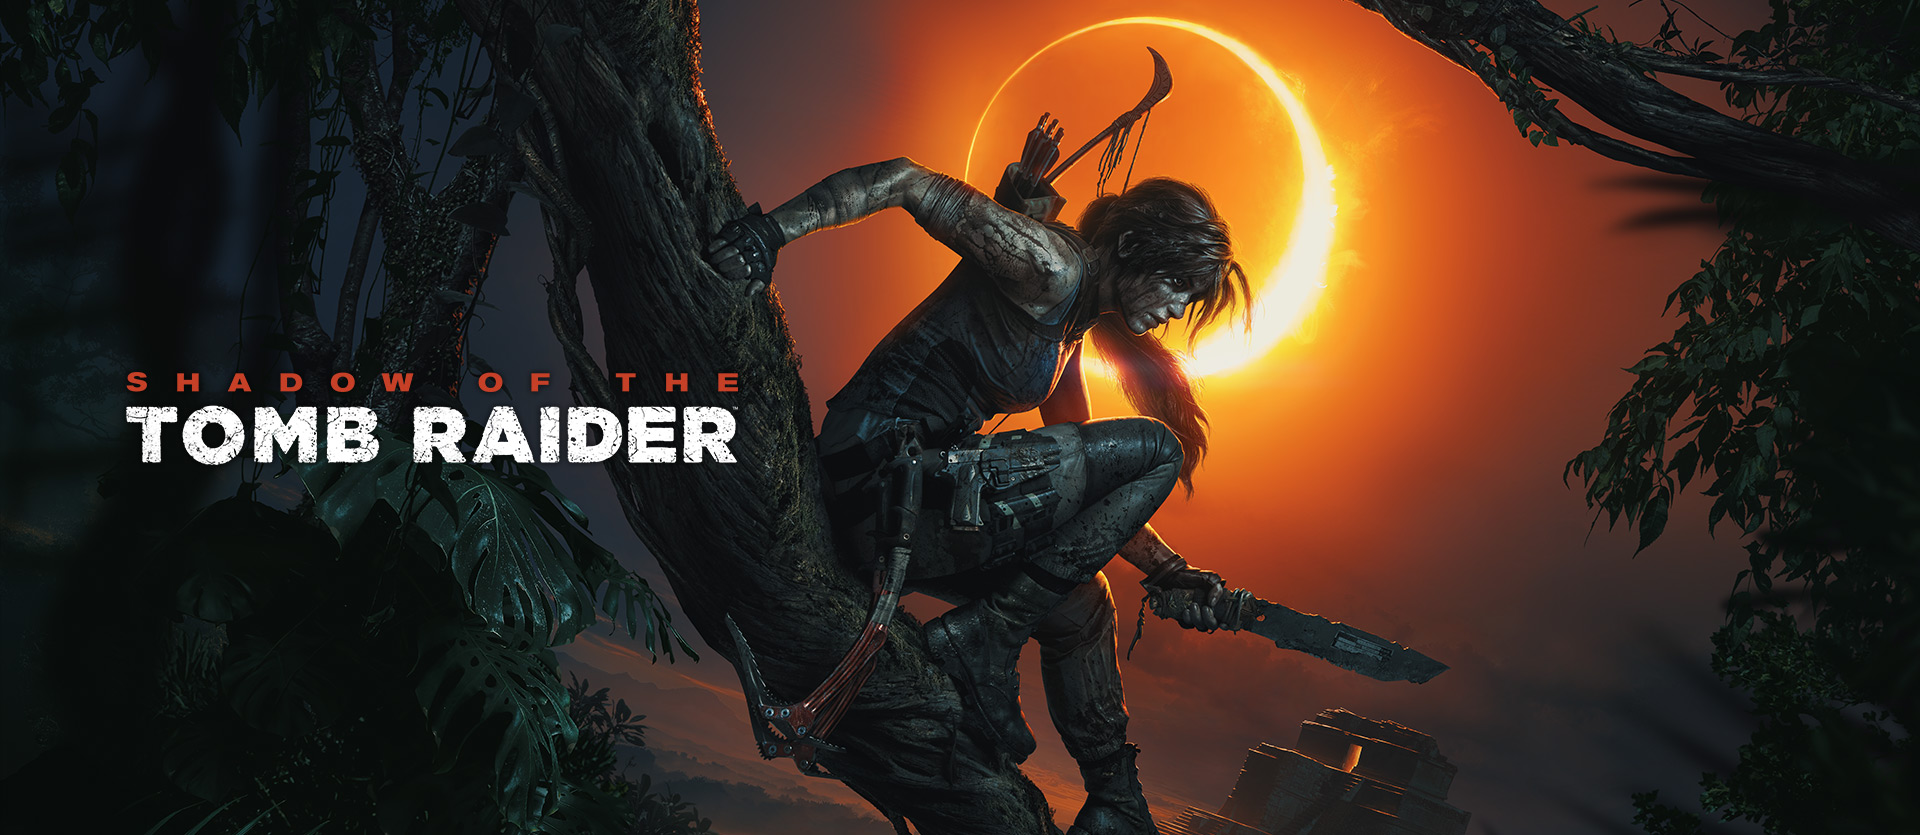 Shadow of the Tomb Raider: Definitive Edition phát hành vào 5 tháng 11